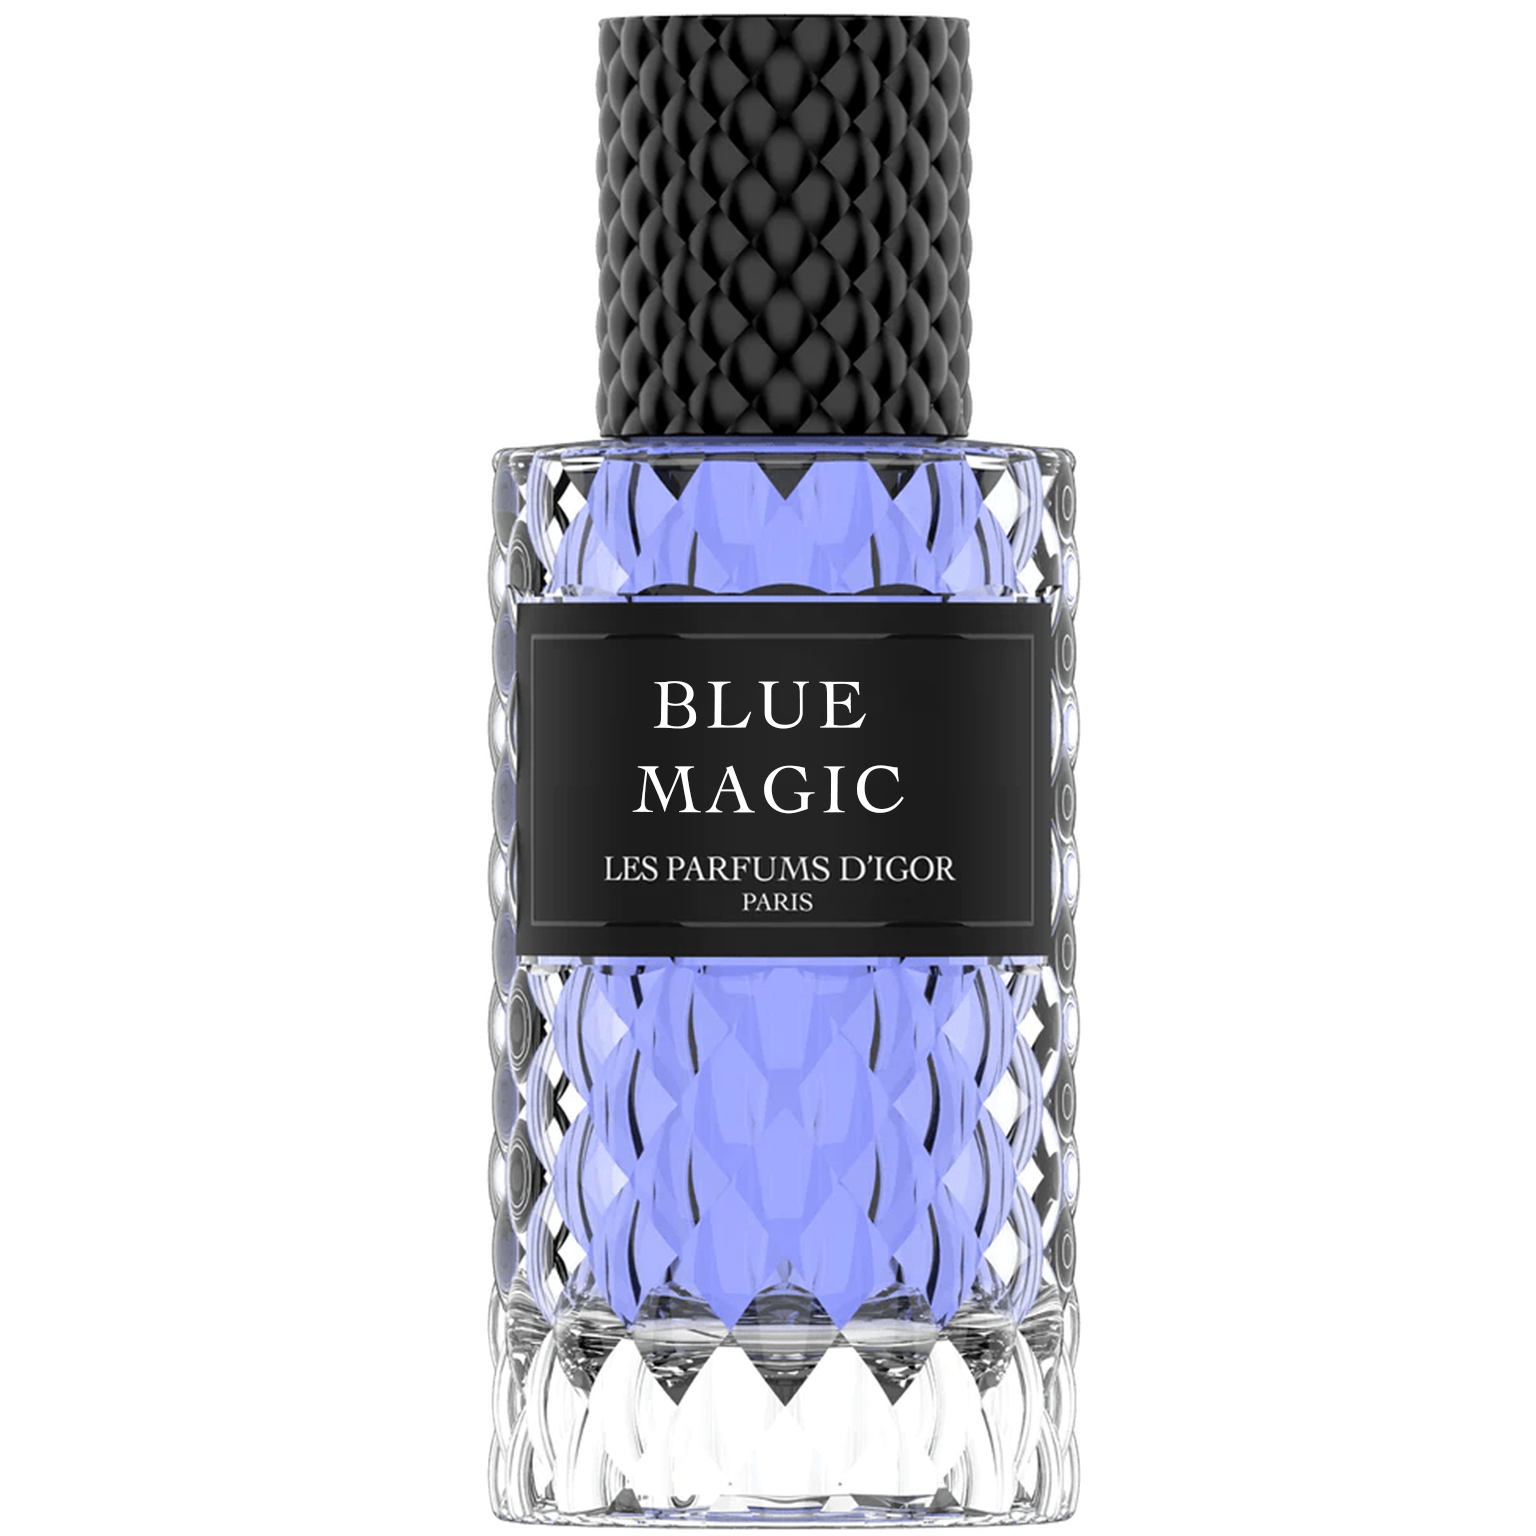 Blue magic - Les parfums d'Igor